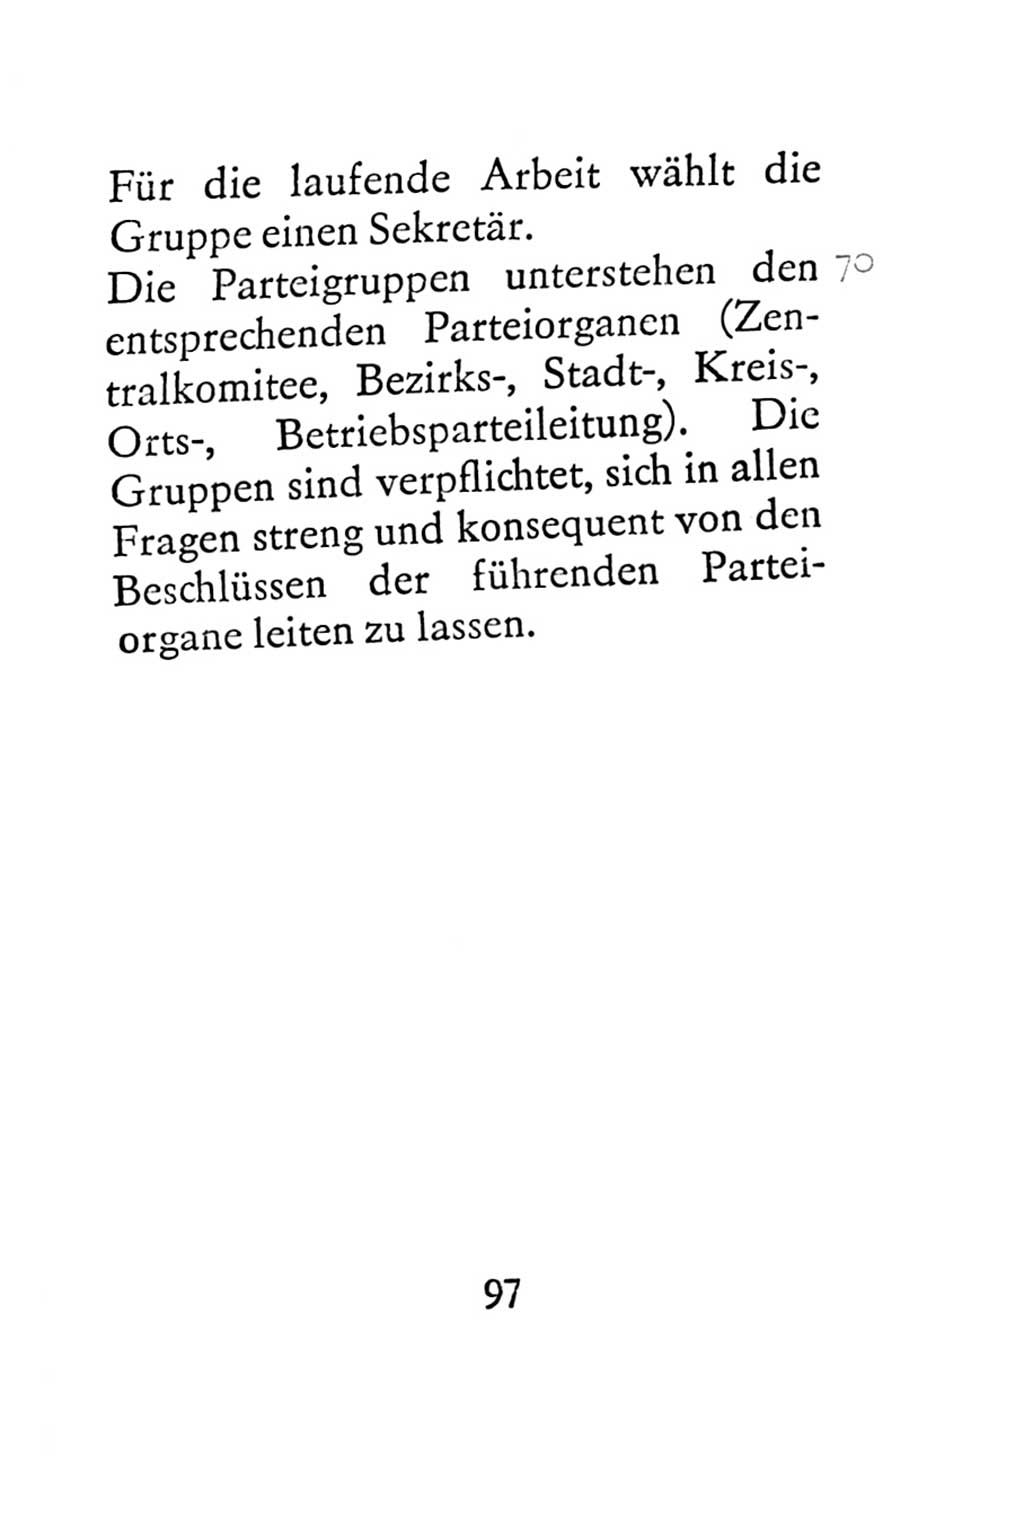 Statut der Sozialistischen Einheitspartei Deutschlands (SED) 1967, Seite 97 (St. SED DDR 1967, S. 97)